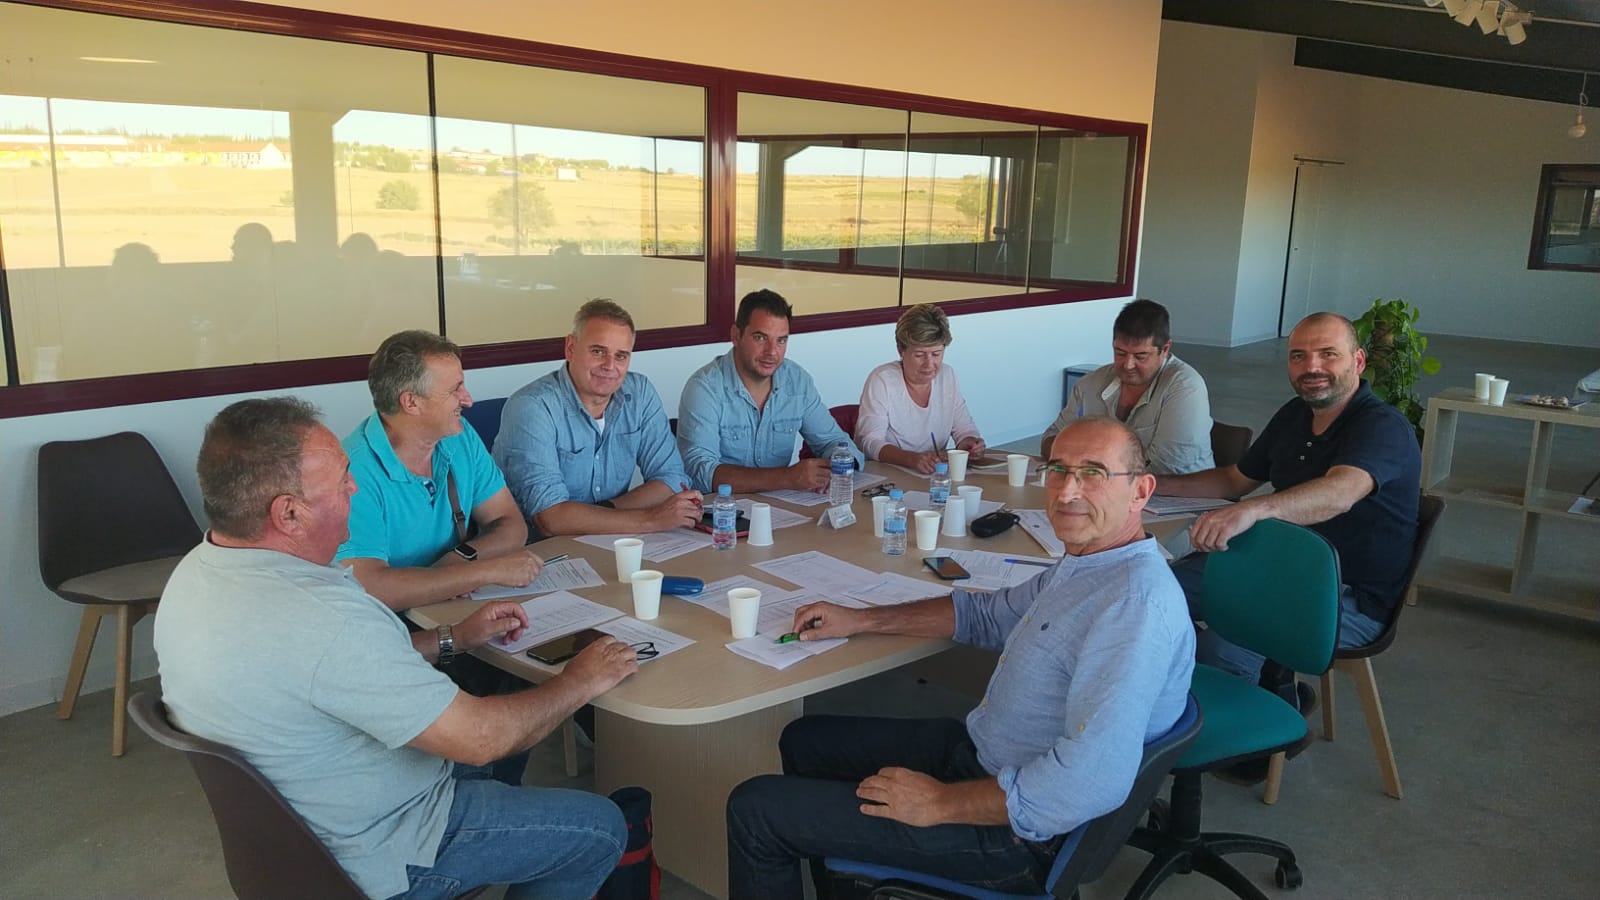 La DOP Azafrán de La Mancha lanza una campaña de recogida de firmas en apoyo a la supervivencia del cultivo del azafrán